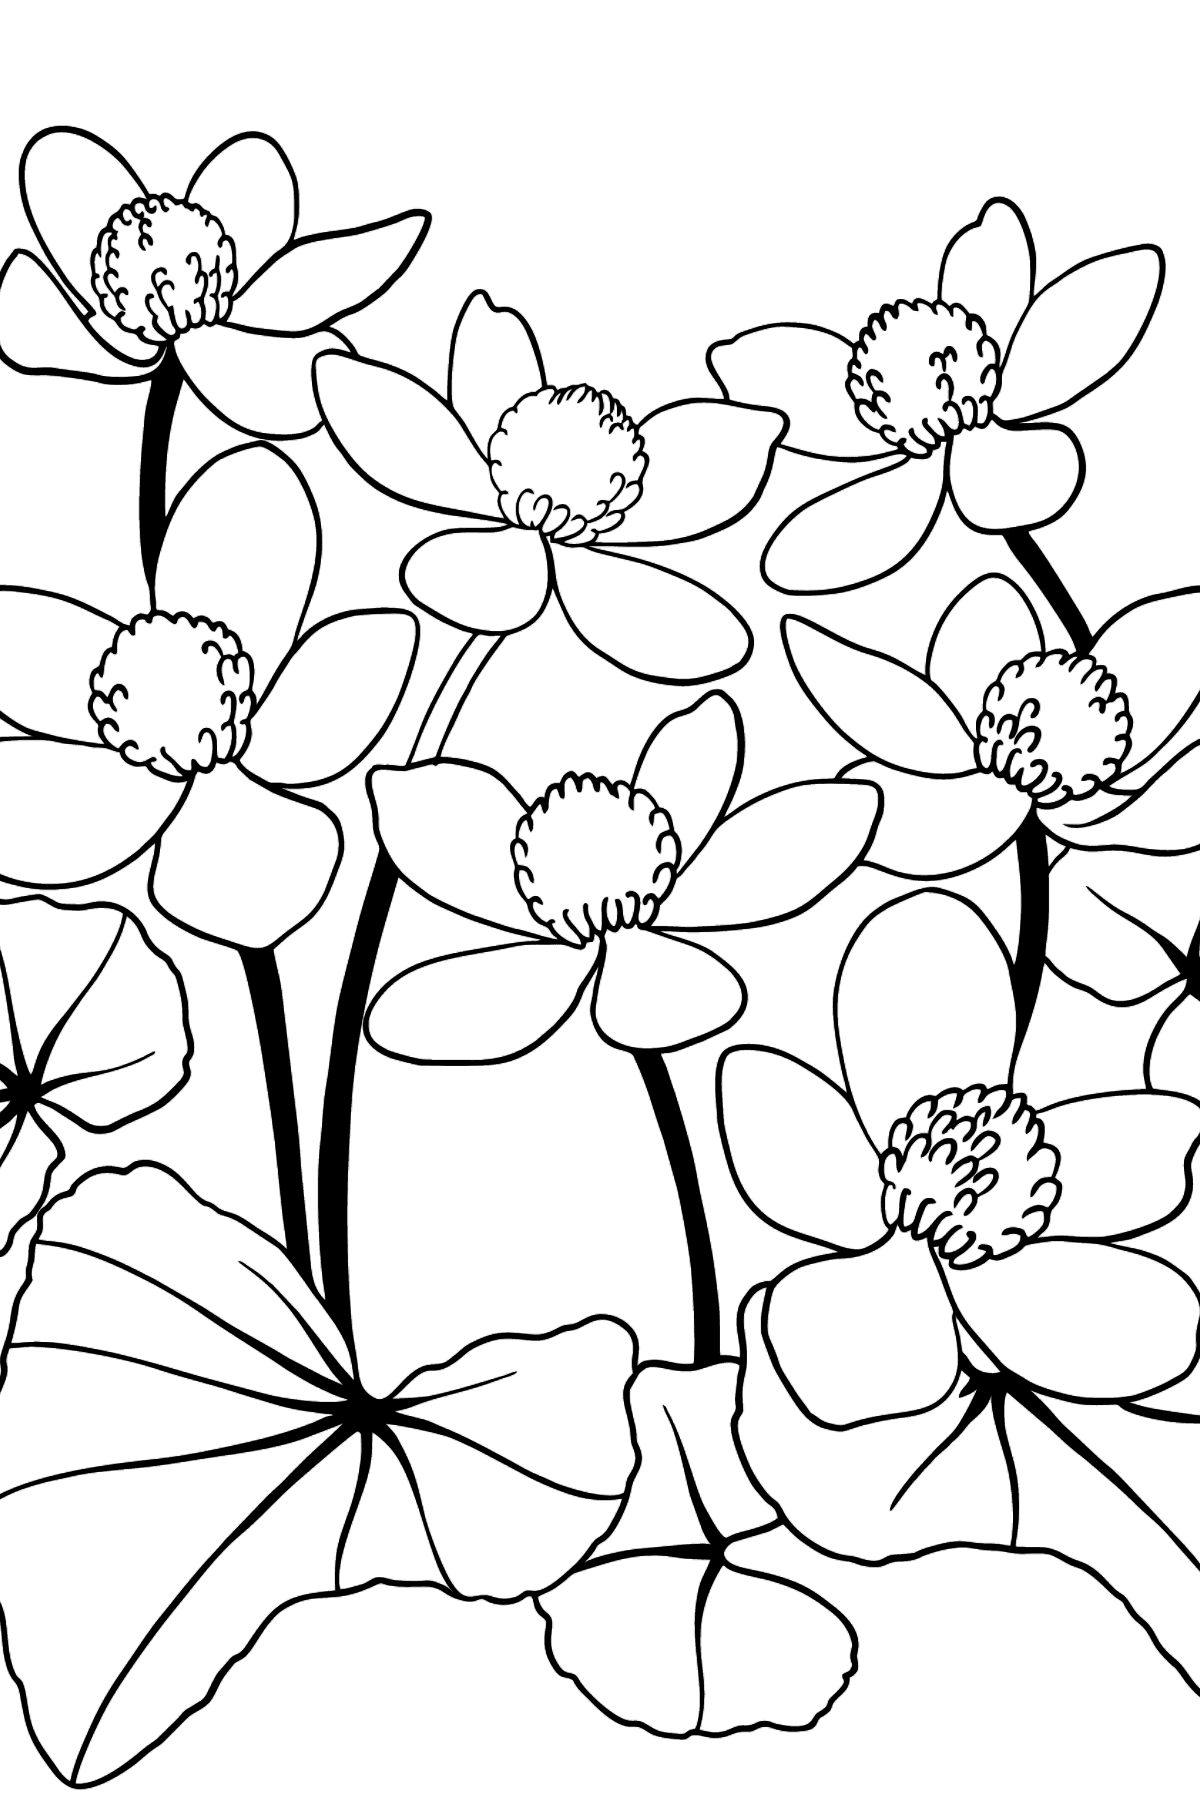 Tegning til fargelegging sjarmerende blomster (vanskelig) - Tegninger til fargelegging for barn